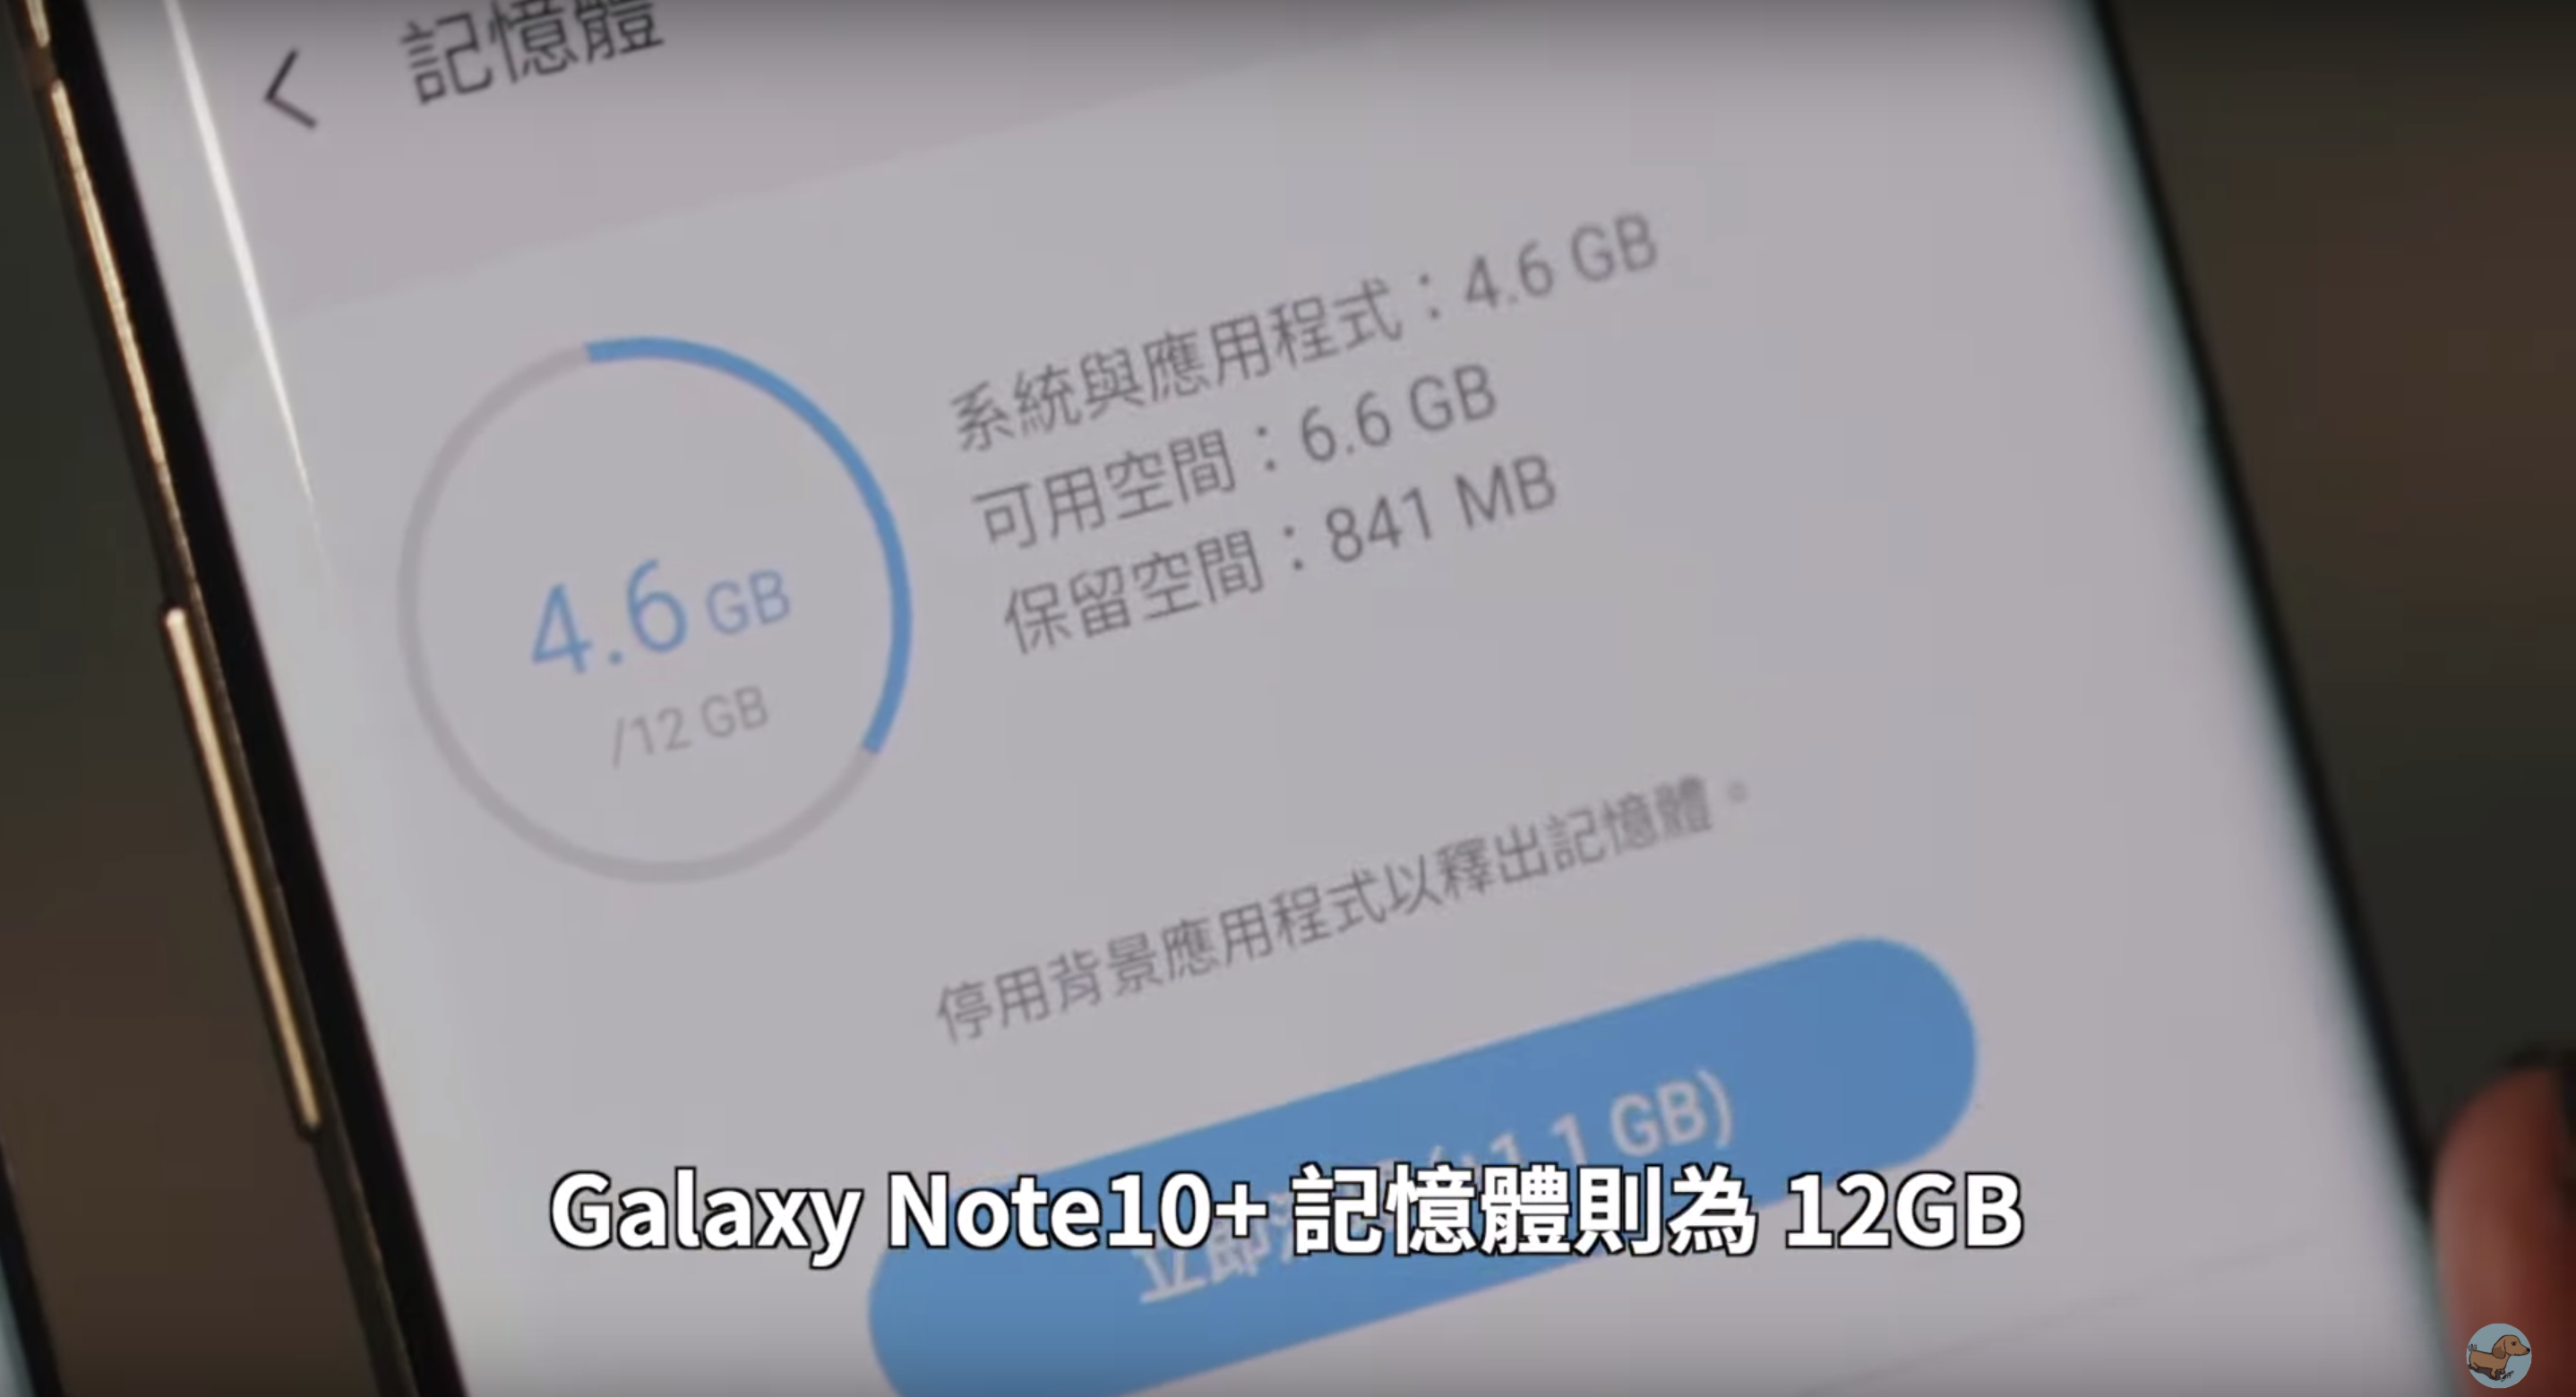 【搶先體驗】Samsung Galaxy Note10/Note10+ 新功能上手！你該選擇誰？｜Air Actions、S Pen、規格、握持手感、Infinity-O、錄影模式、ToF鏡頭｜科技狗 - Galaxy, galaxy note10+, galaxynote10, note, note10, Samsung, 三星, 台灣三星, 韓國三星 - 科技狗 3C DOG